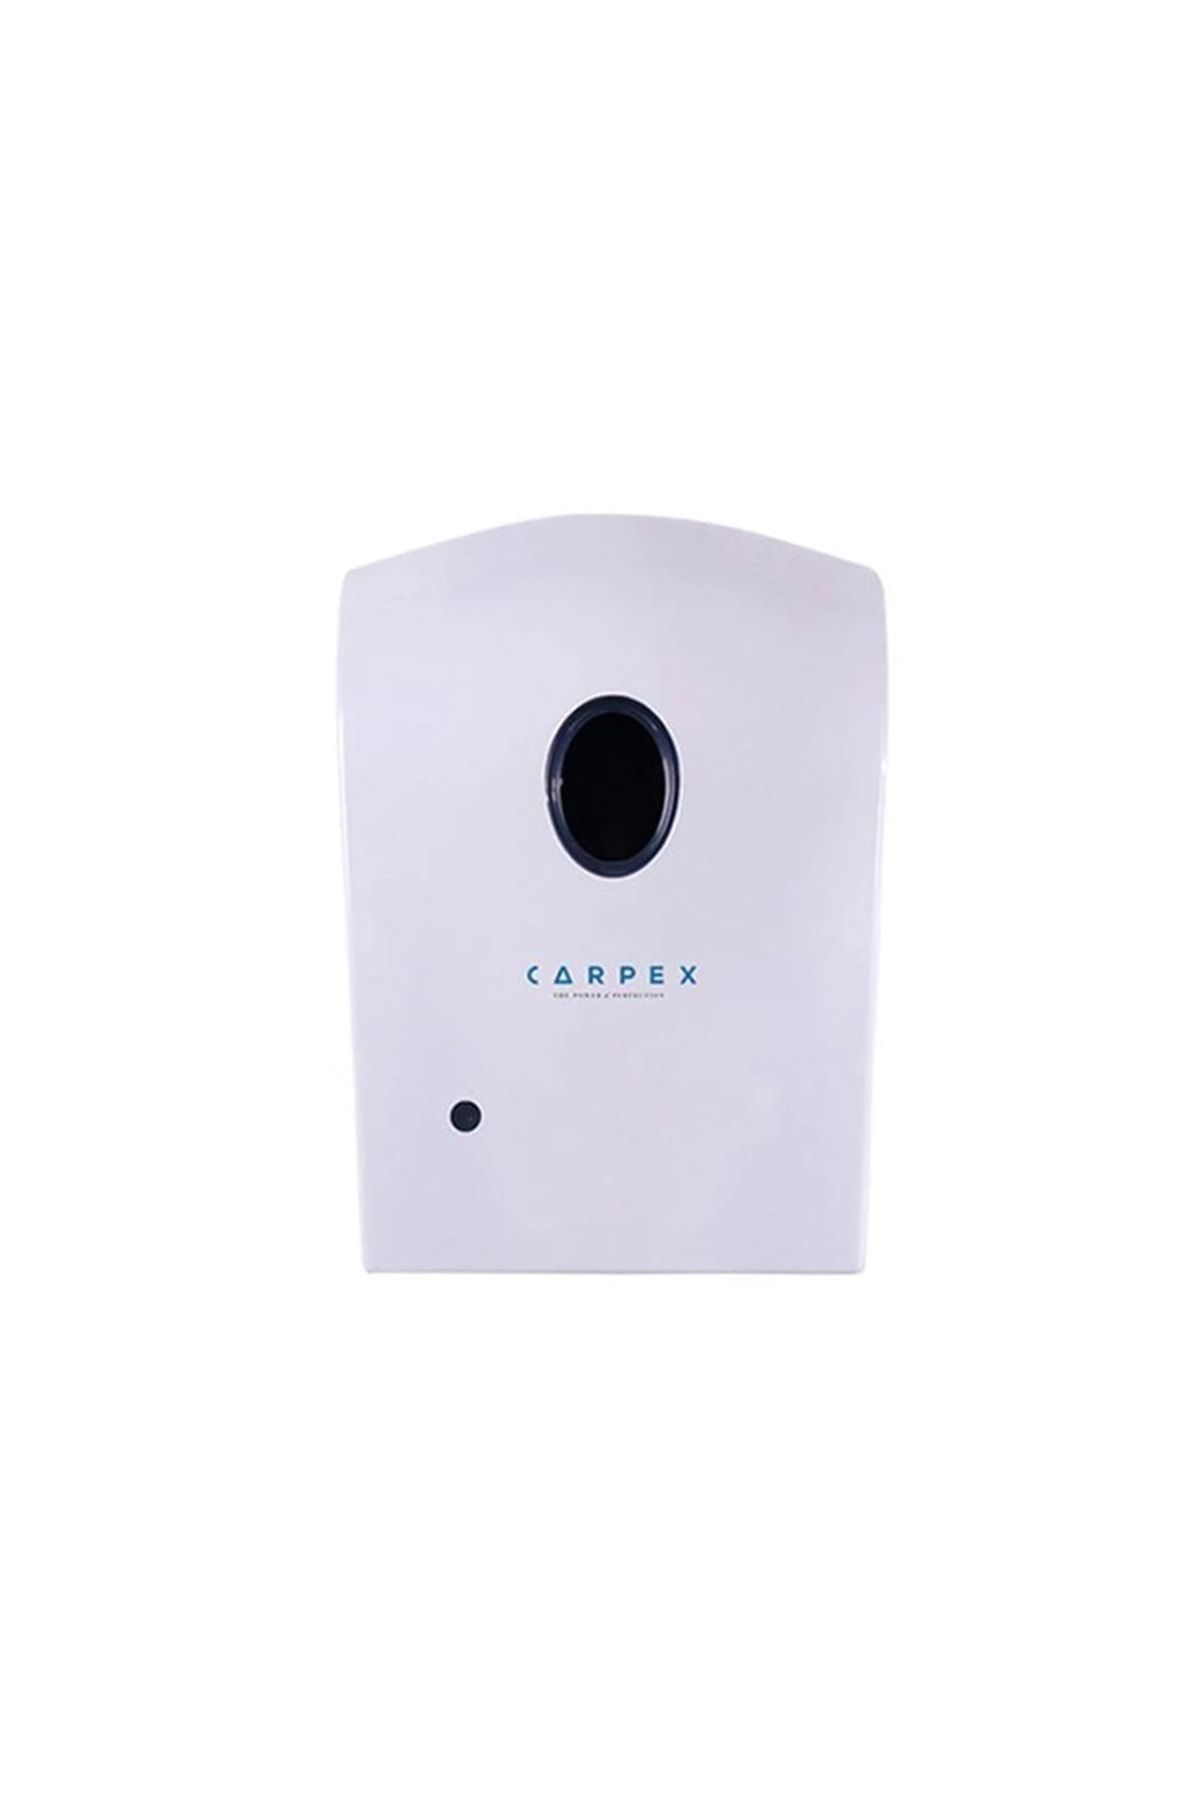 Carpex Otomatik Sensörlü Köpük Sabun Dispenseri Hazneli Beyaz